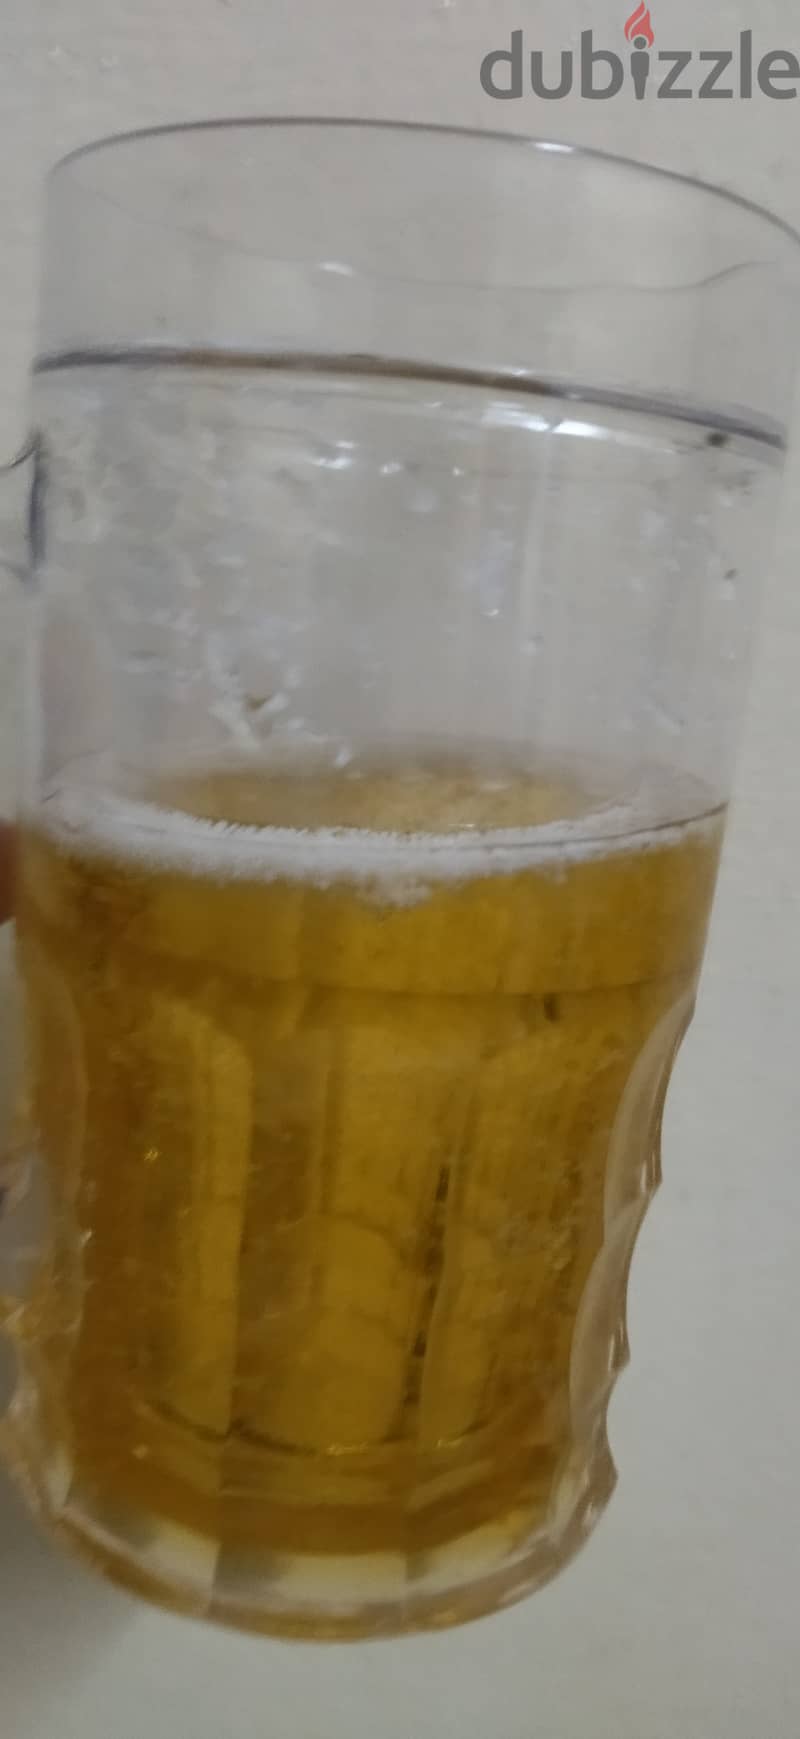 Fake beer cup 17